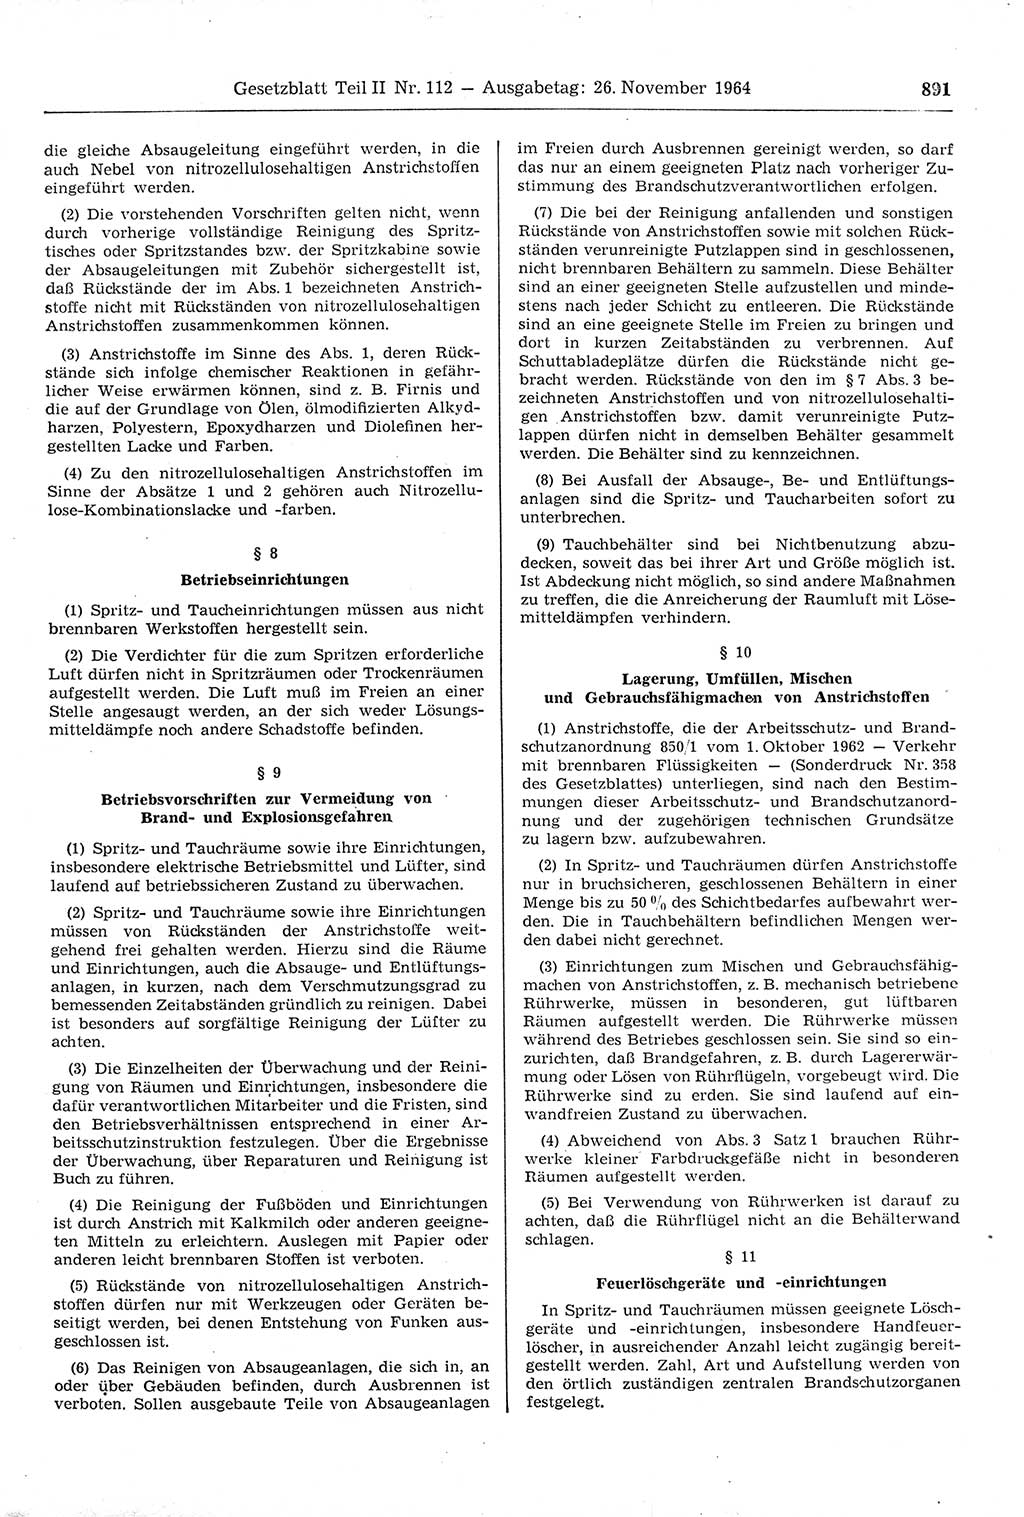 Gesetzblatt (GBl.) der Deutschen Demokratischen Republik (DDR) Teil ⅠⅠ 1964, Seite 891 (GBl. DDR ⅠⅠ 1964, S. 891)